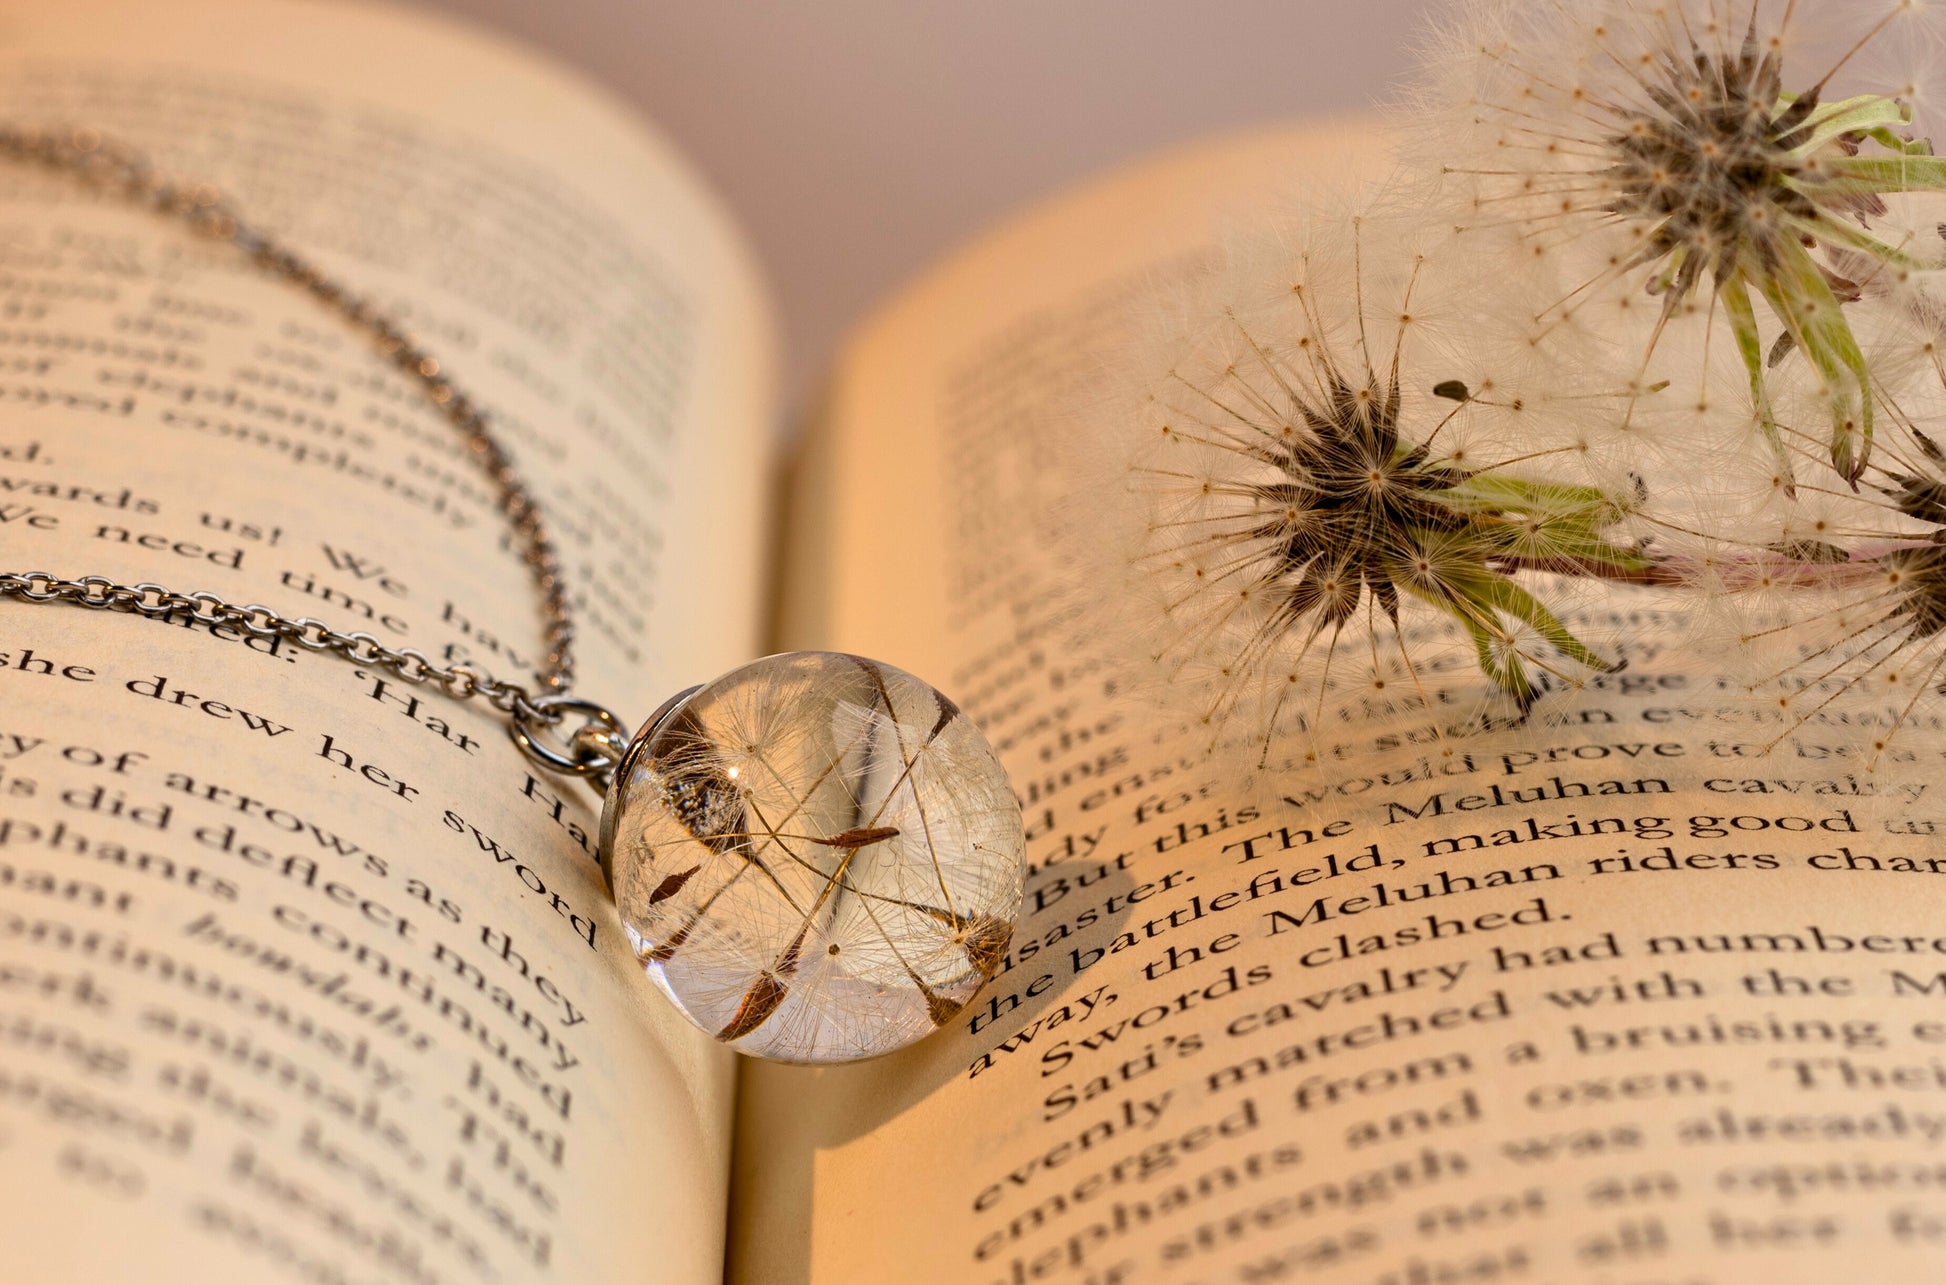 Dandelion Pendant | Real Flower Jewellery | Dandelion